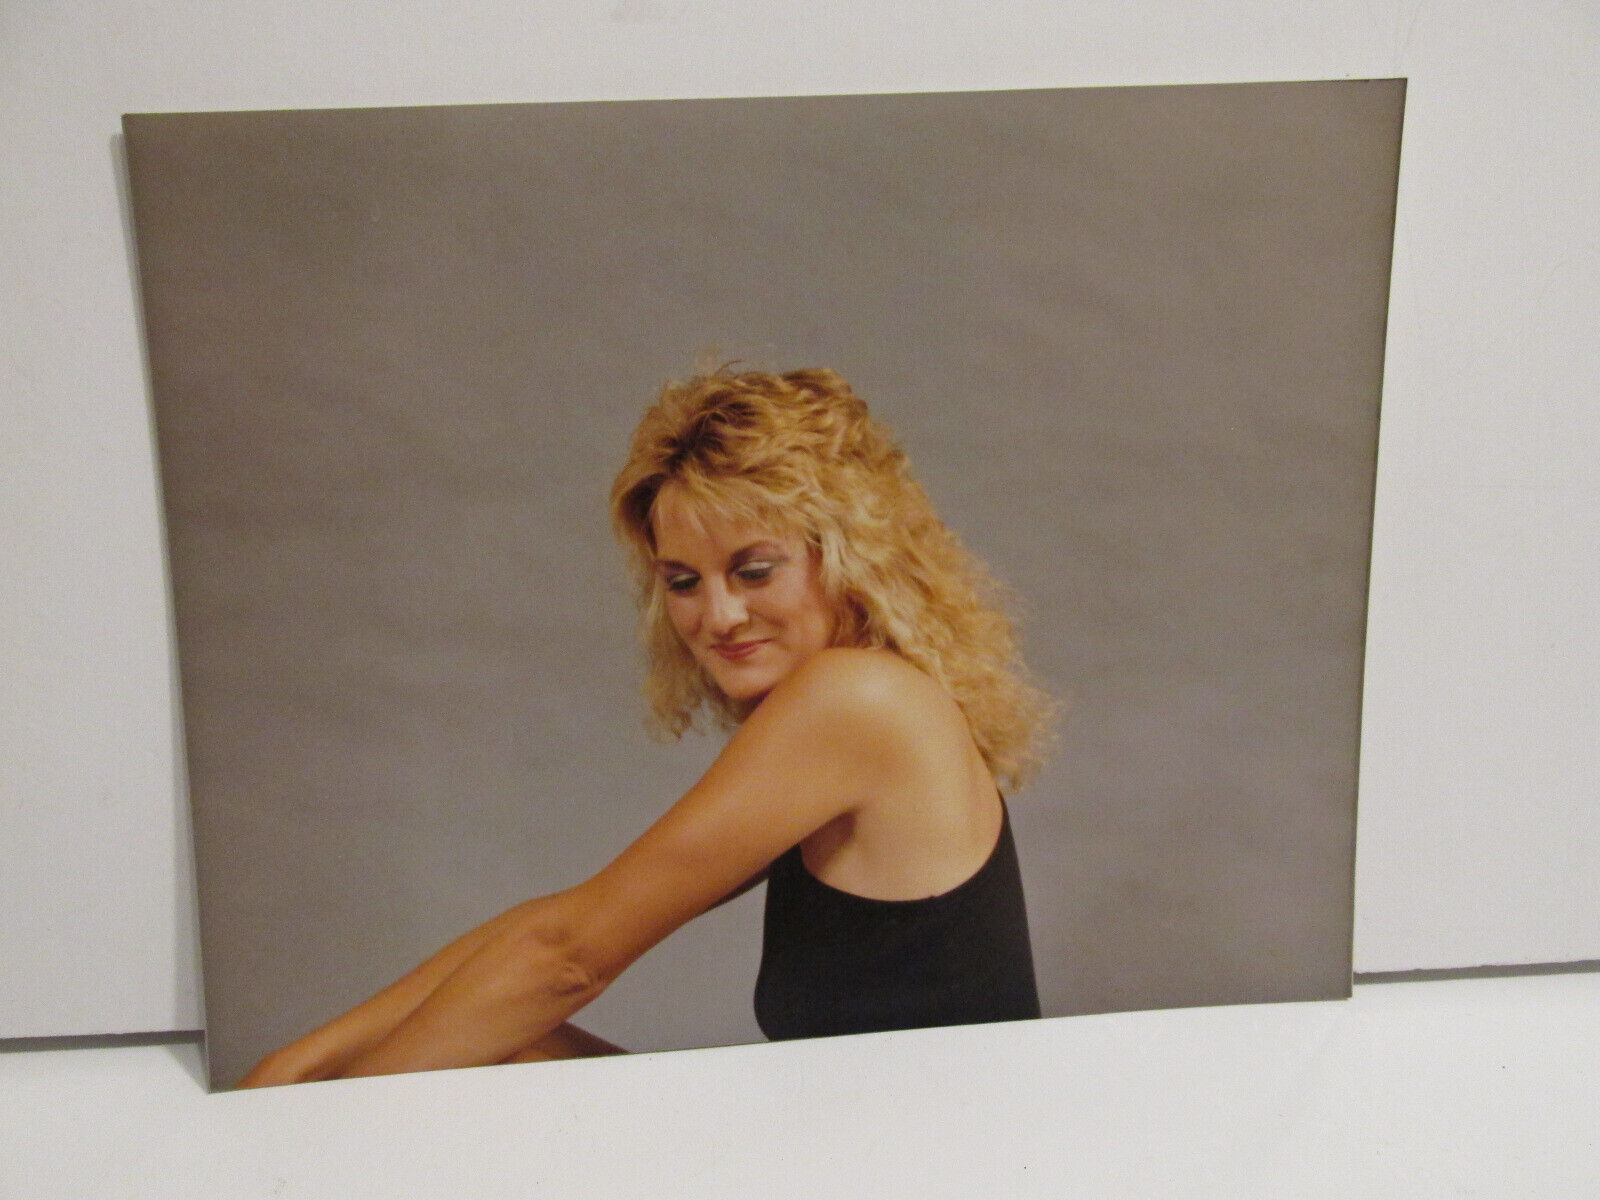 1980S VINTAGE FOUND PHOTOGRAPH COLOR ORIGINAL ART PHOTO AMATEUR MODEL WOMAN PIC